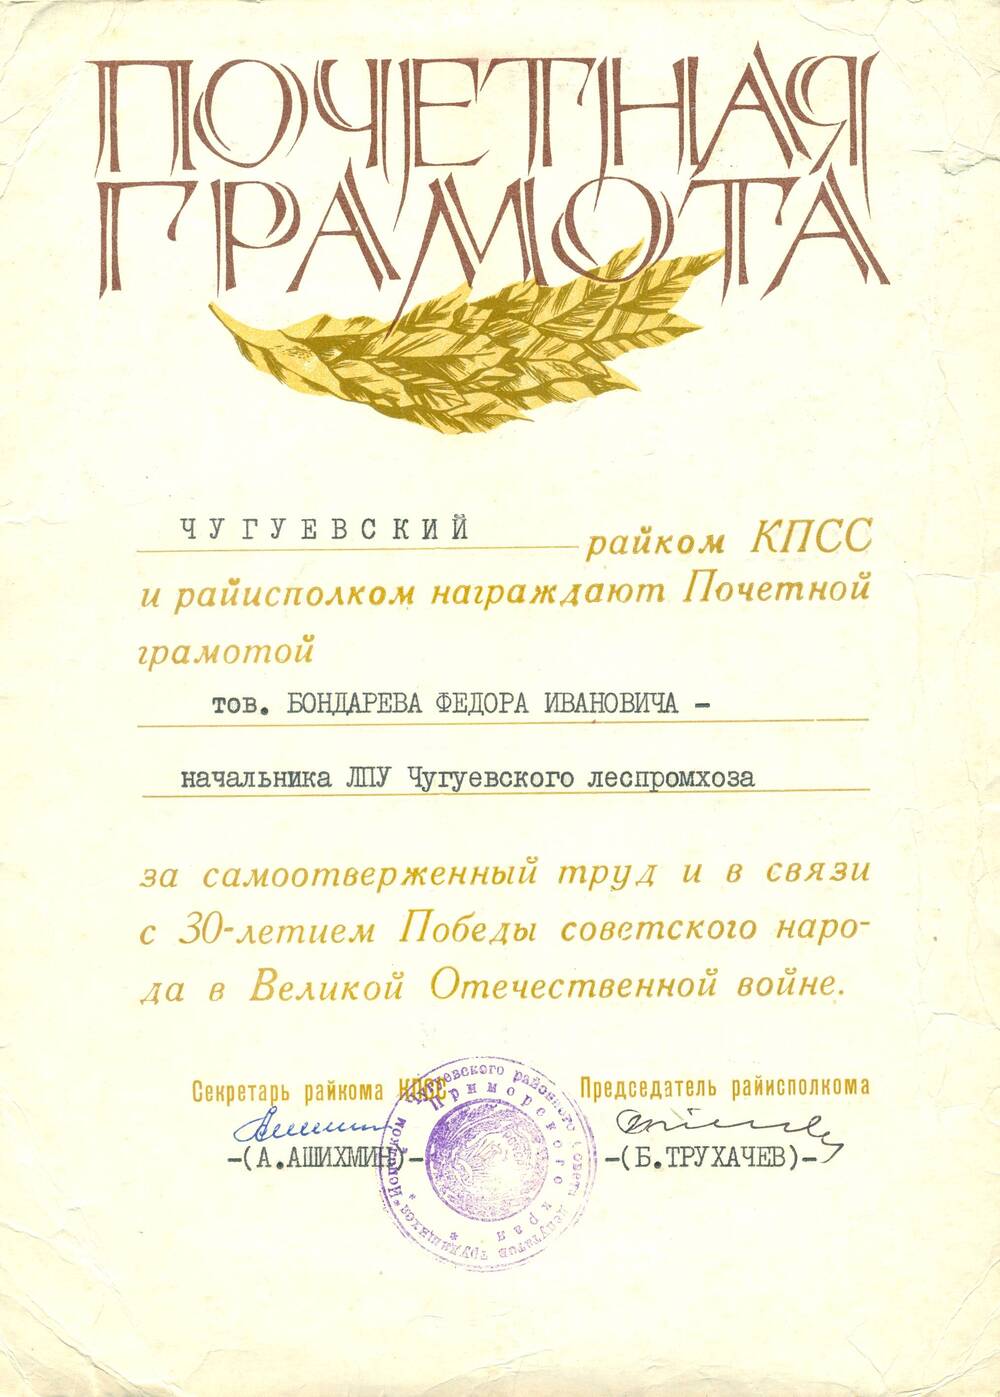 Почётная грамота Бондарева Ф.И. в честь 30-летия Победы